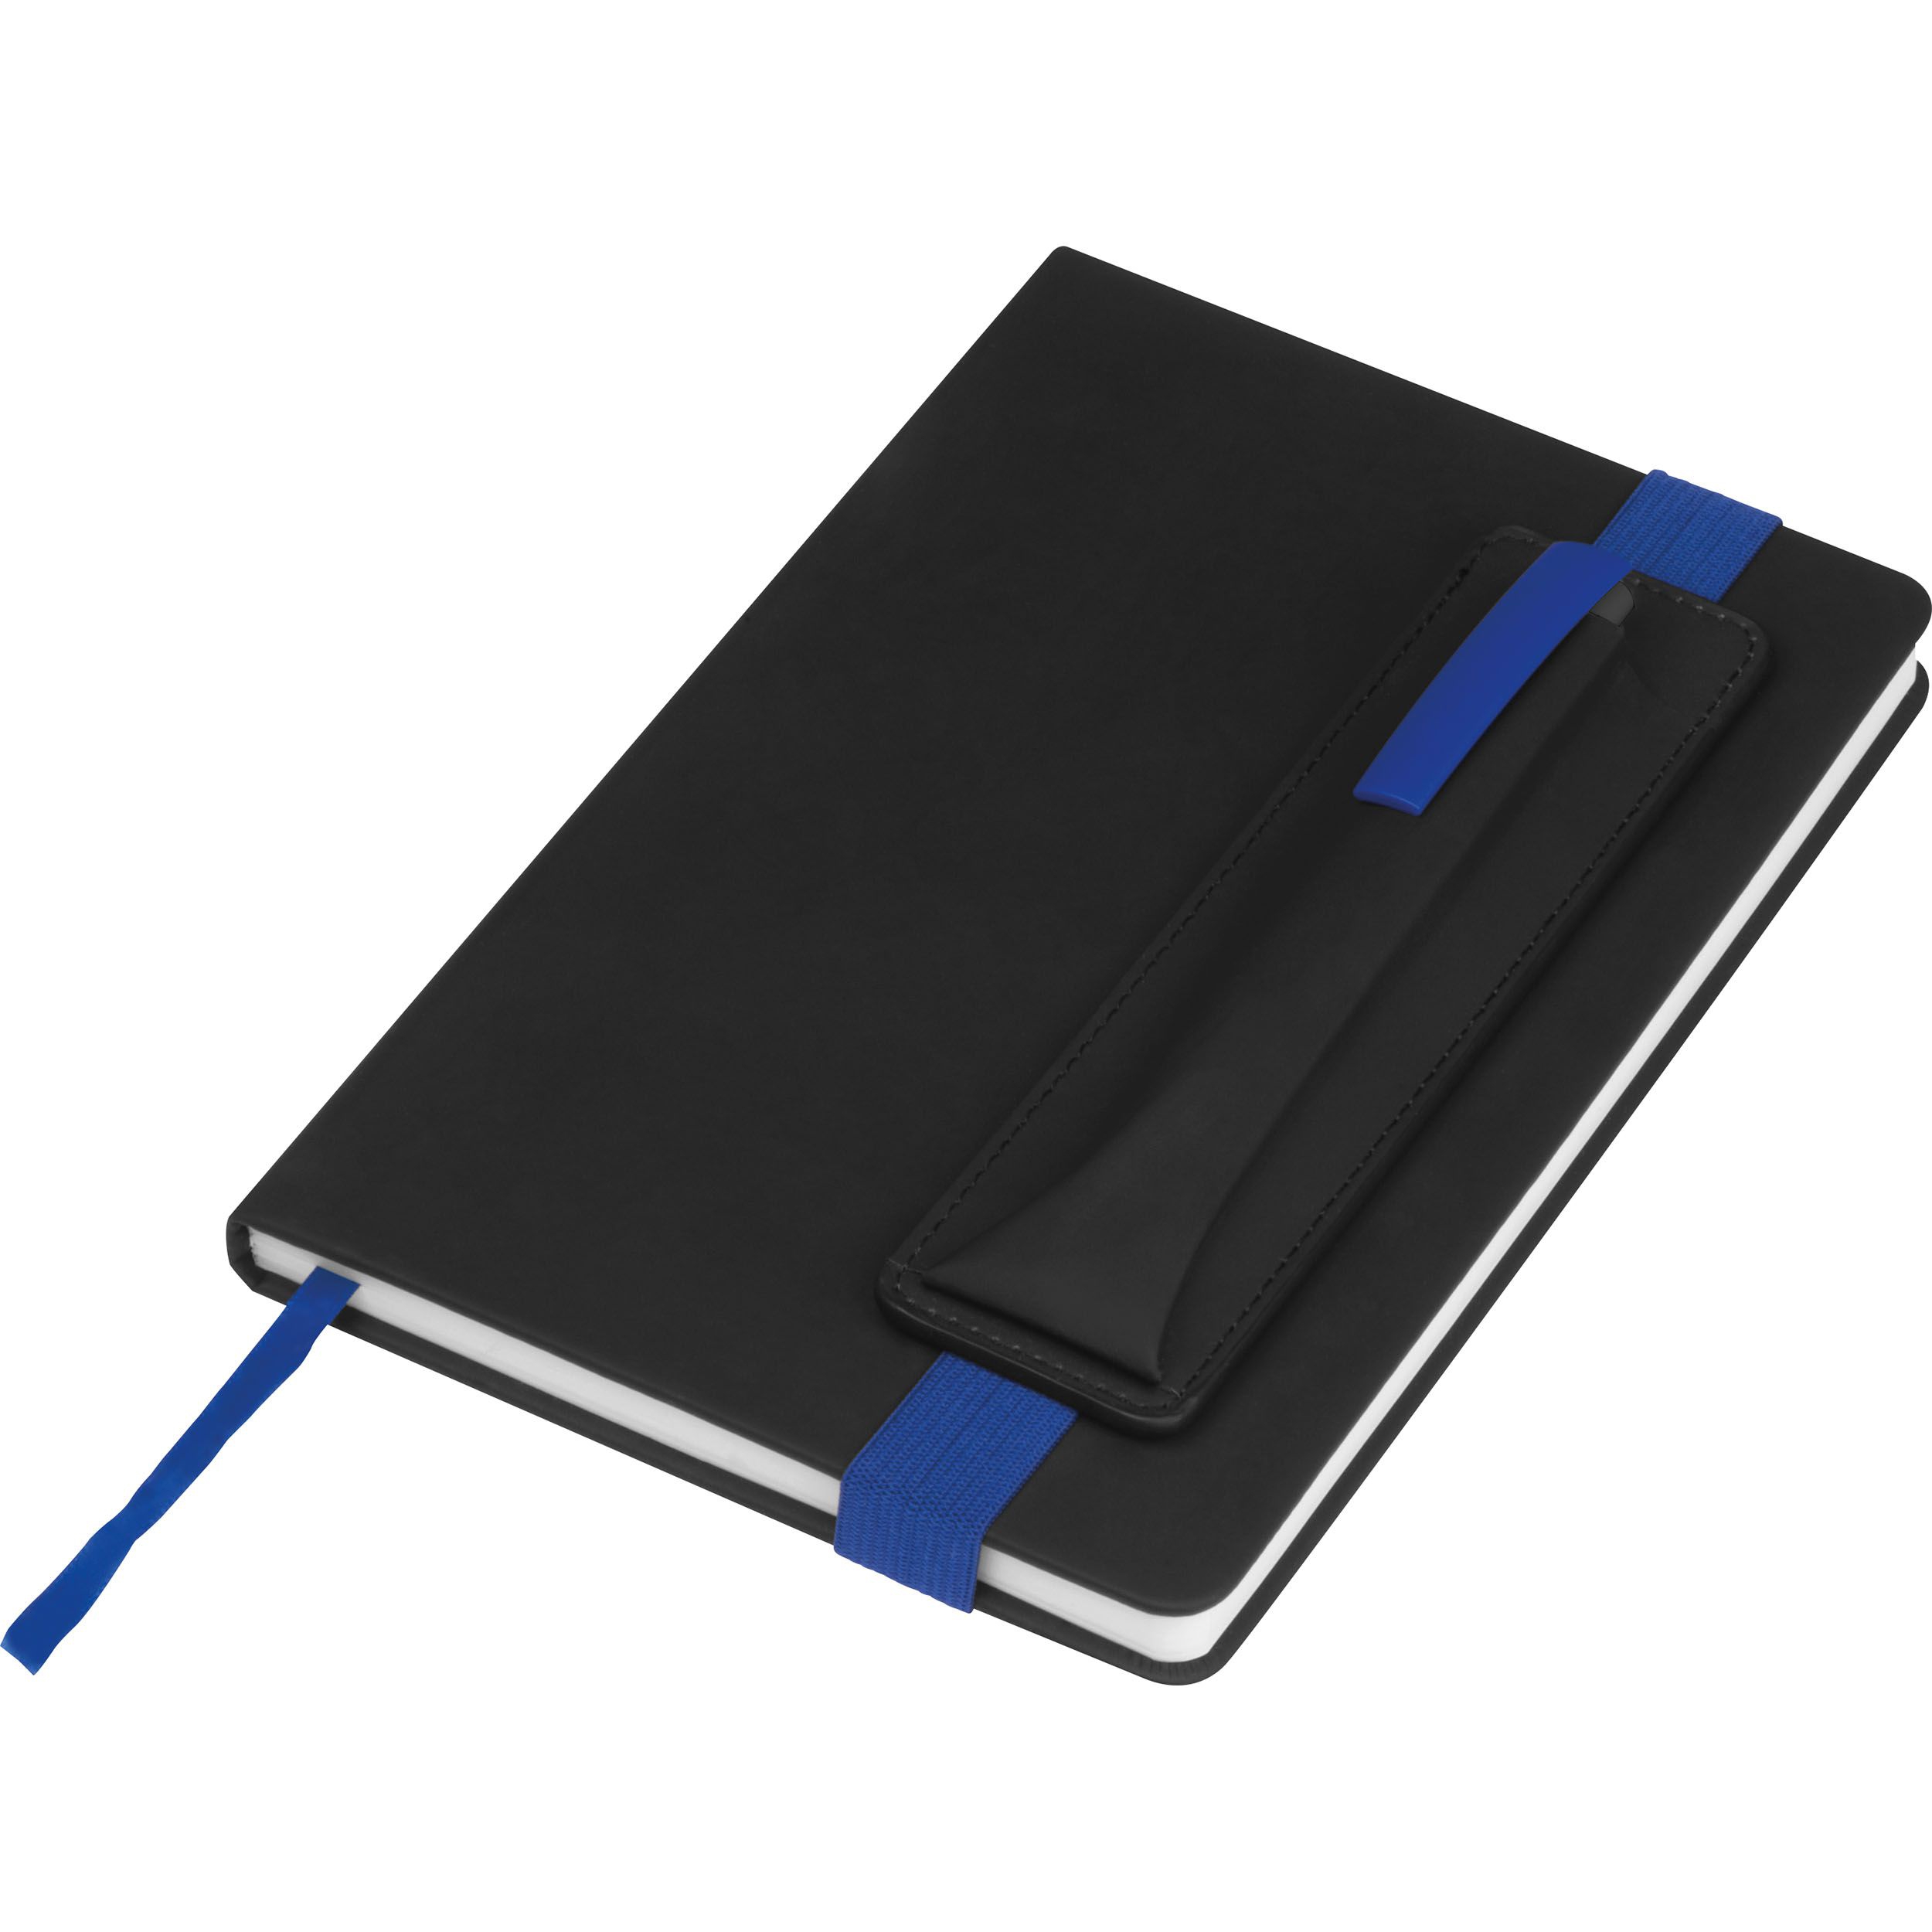 Notizbuch mit farbigen Applikationen, blau